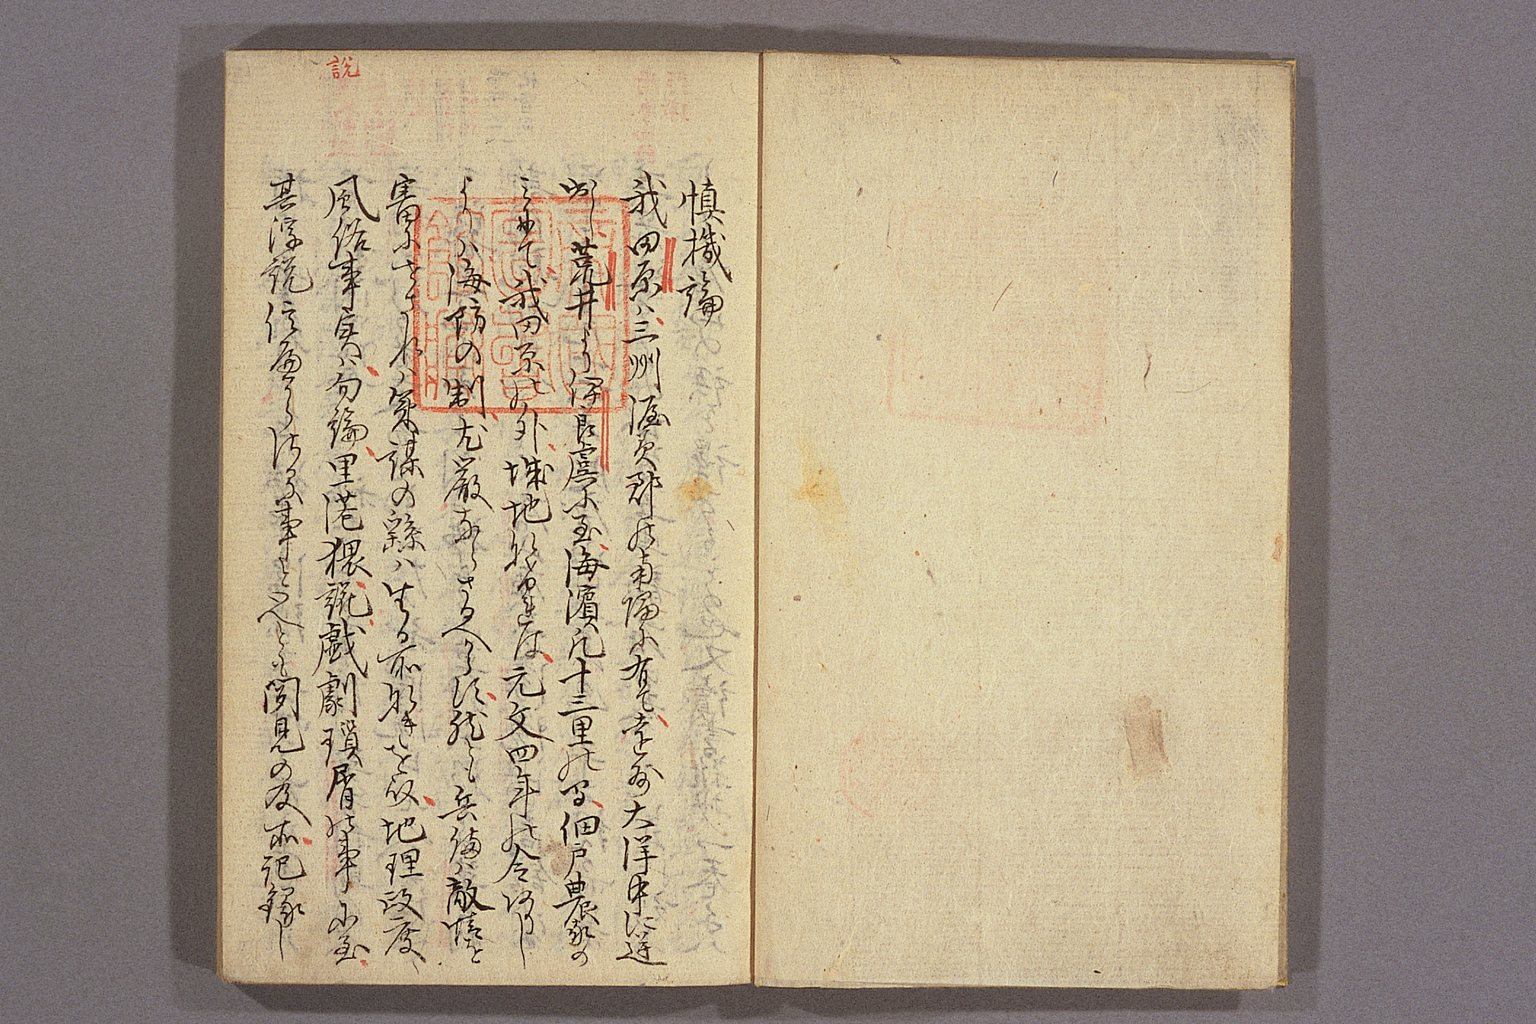 慎機論 (『不忍叢書』2所収)（拡大画像 064-001） | 江戸時代の日蘭交流